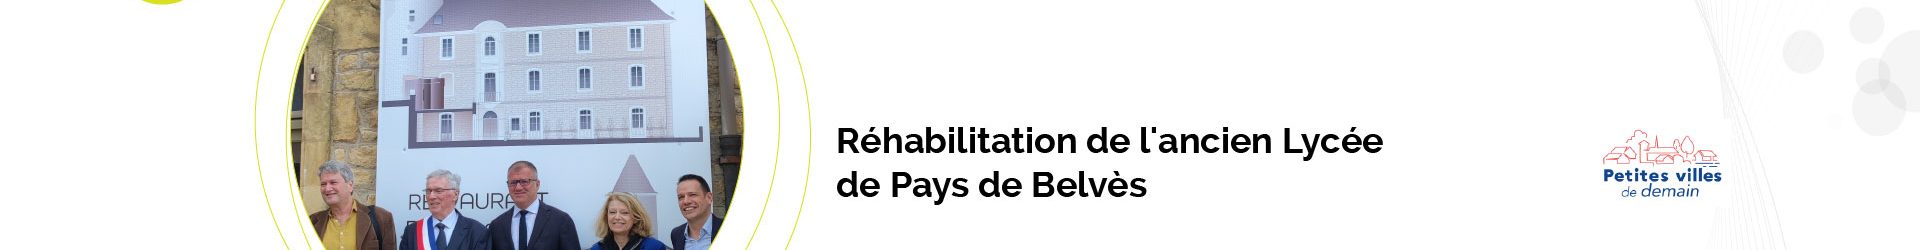 Le chantier de réhabilitation de l’ancien Lycée de Pays de Belvès est lancé !